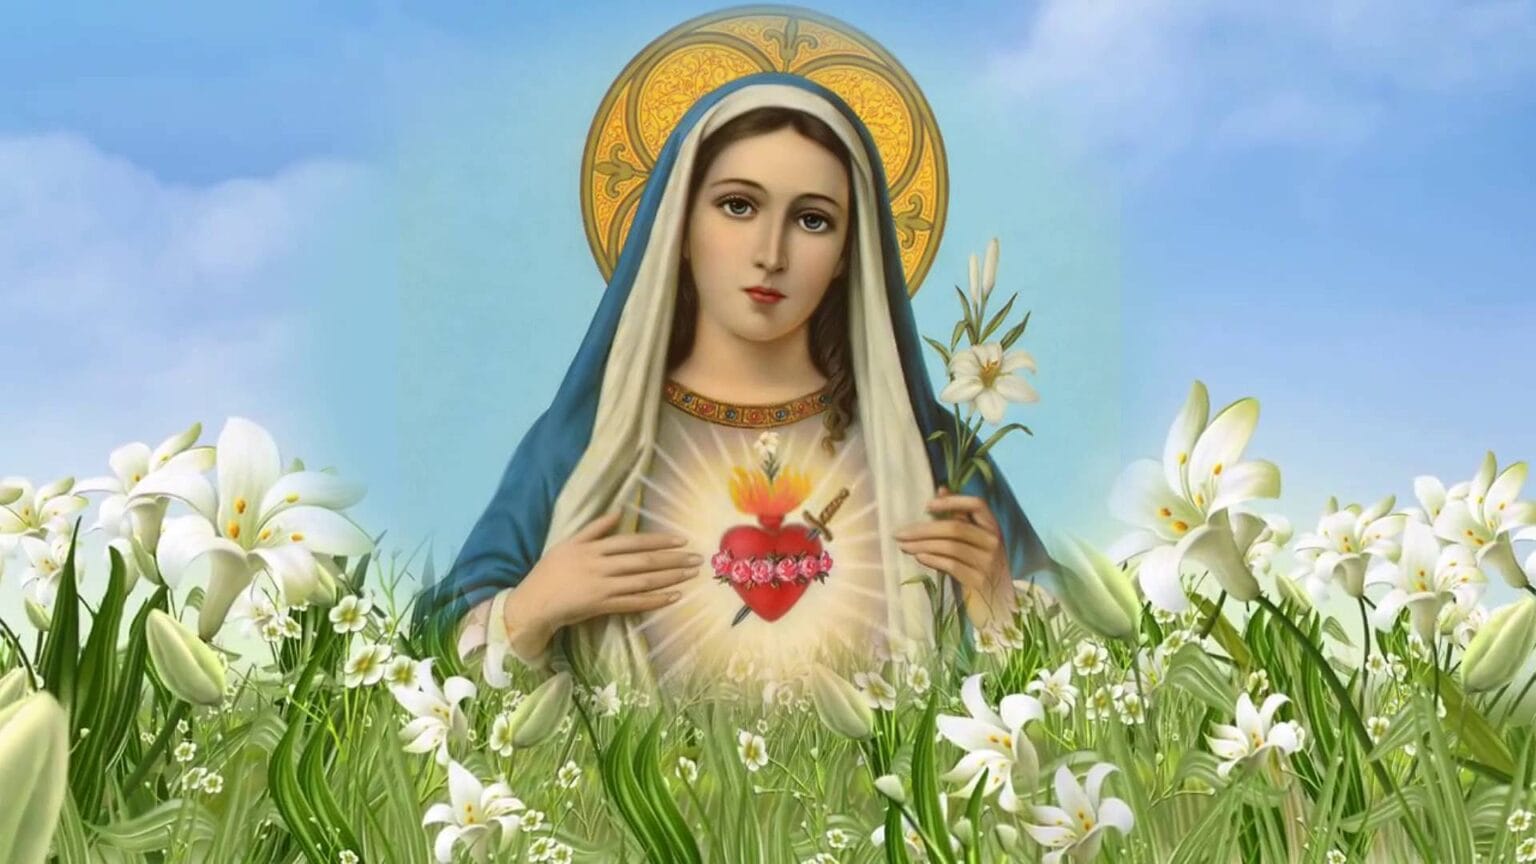 Tranh công giáo Đức Mẹ Maria hiện ra